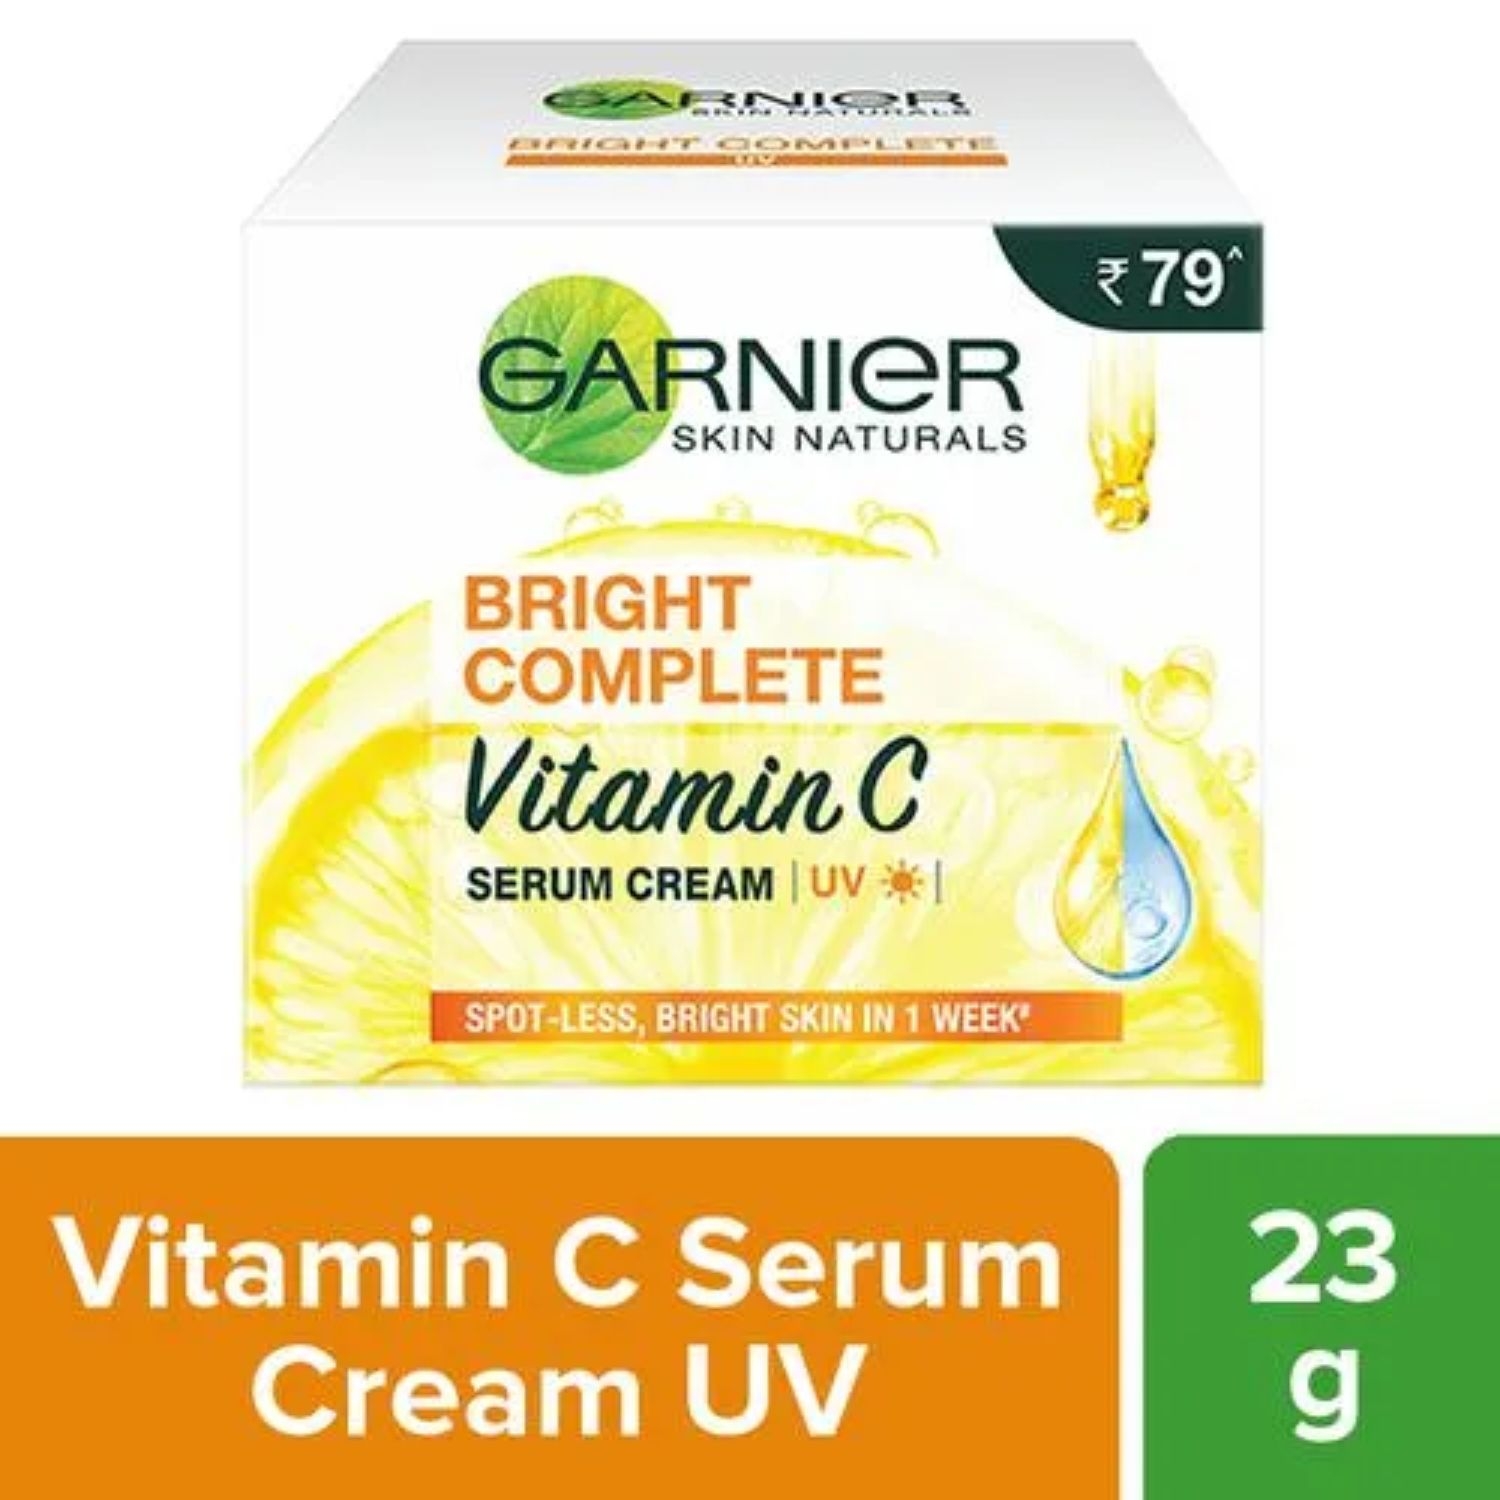 Garnier | Garnier Bright Complete Vitamin C UV Serum Cream UV (23g)